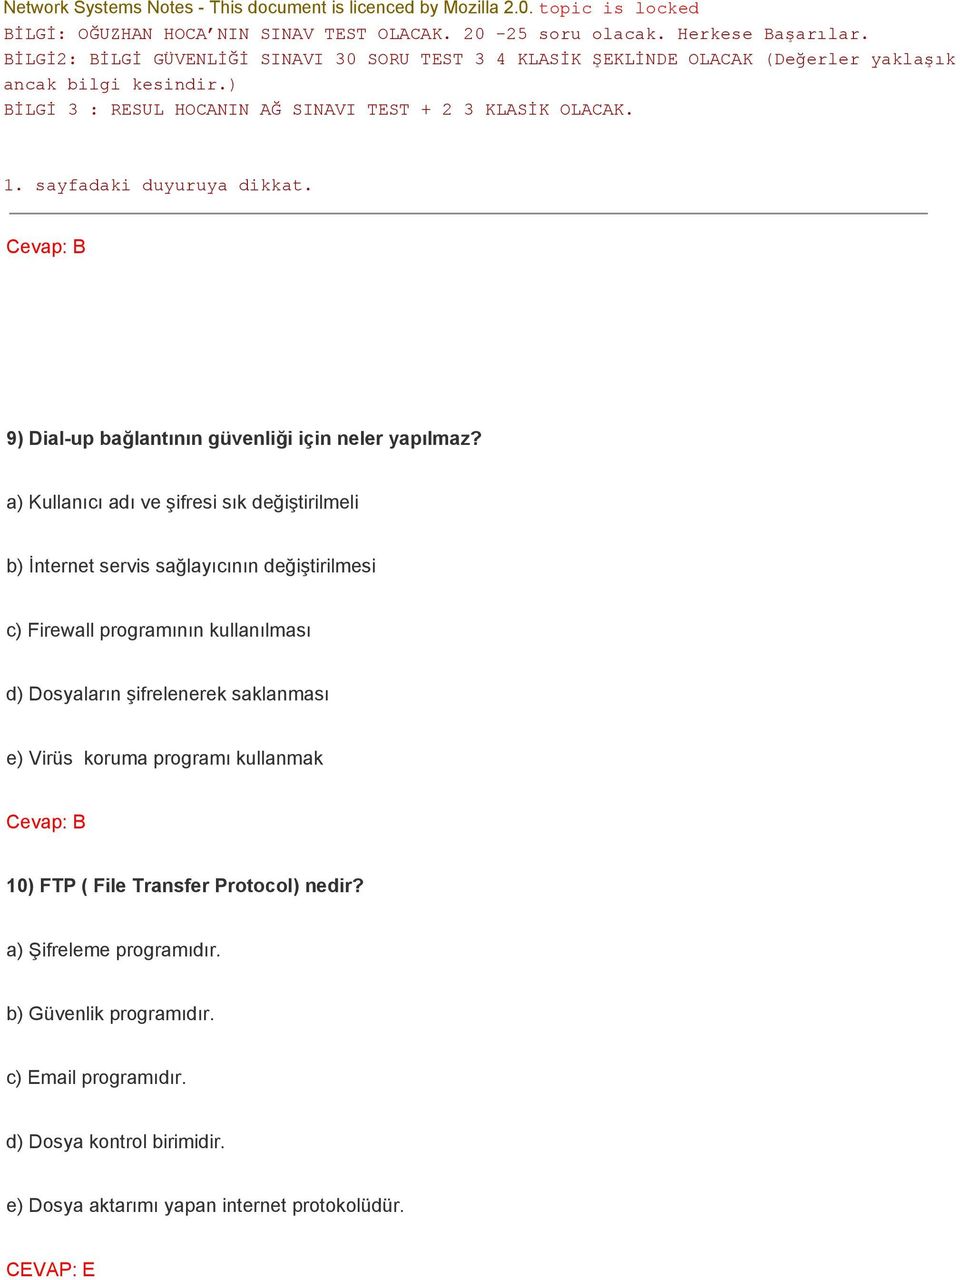 kullanılması d) Dosyaların şifrelenerek saklanması e) Virüs koruma programı kullanmak Cevap: B 10) FTP ( File Transfer